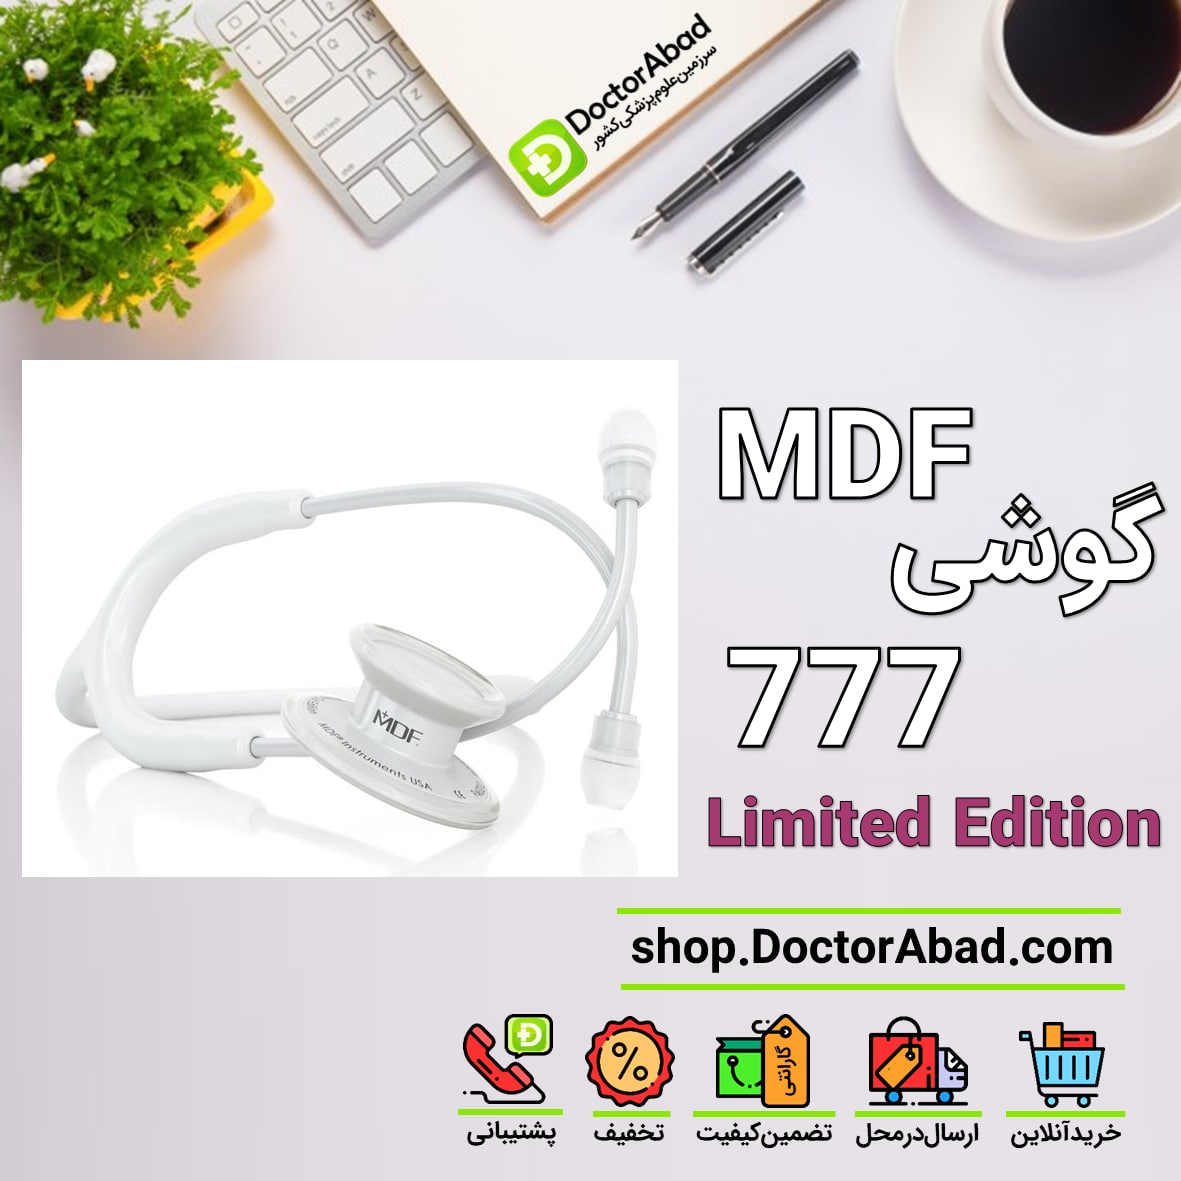 گوشی پزشکی MDF 777 Limited Edition